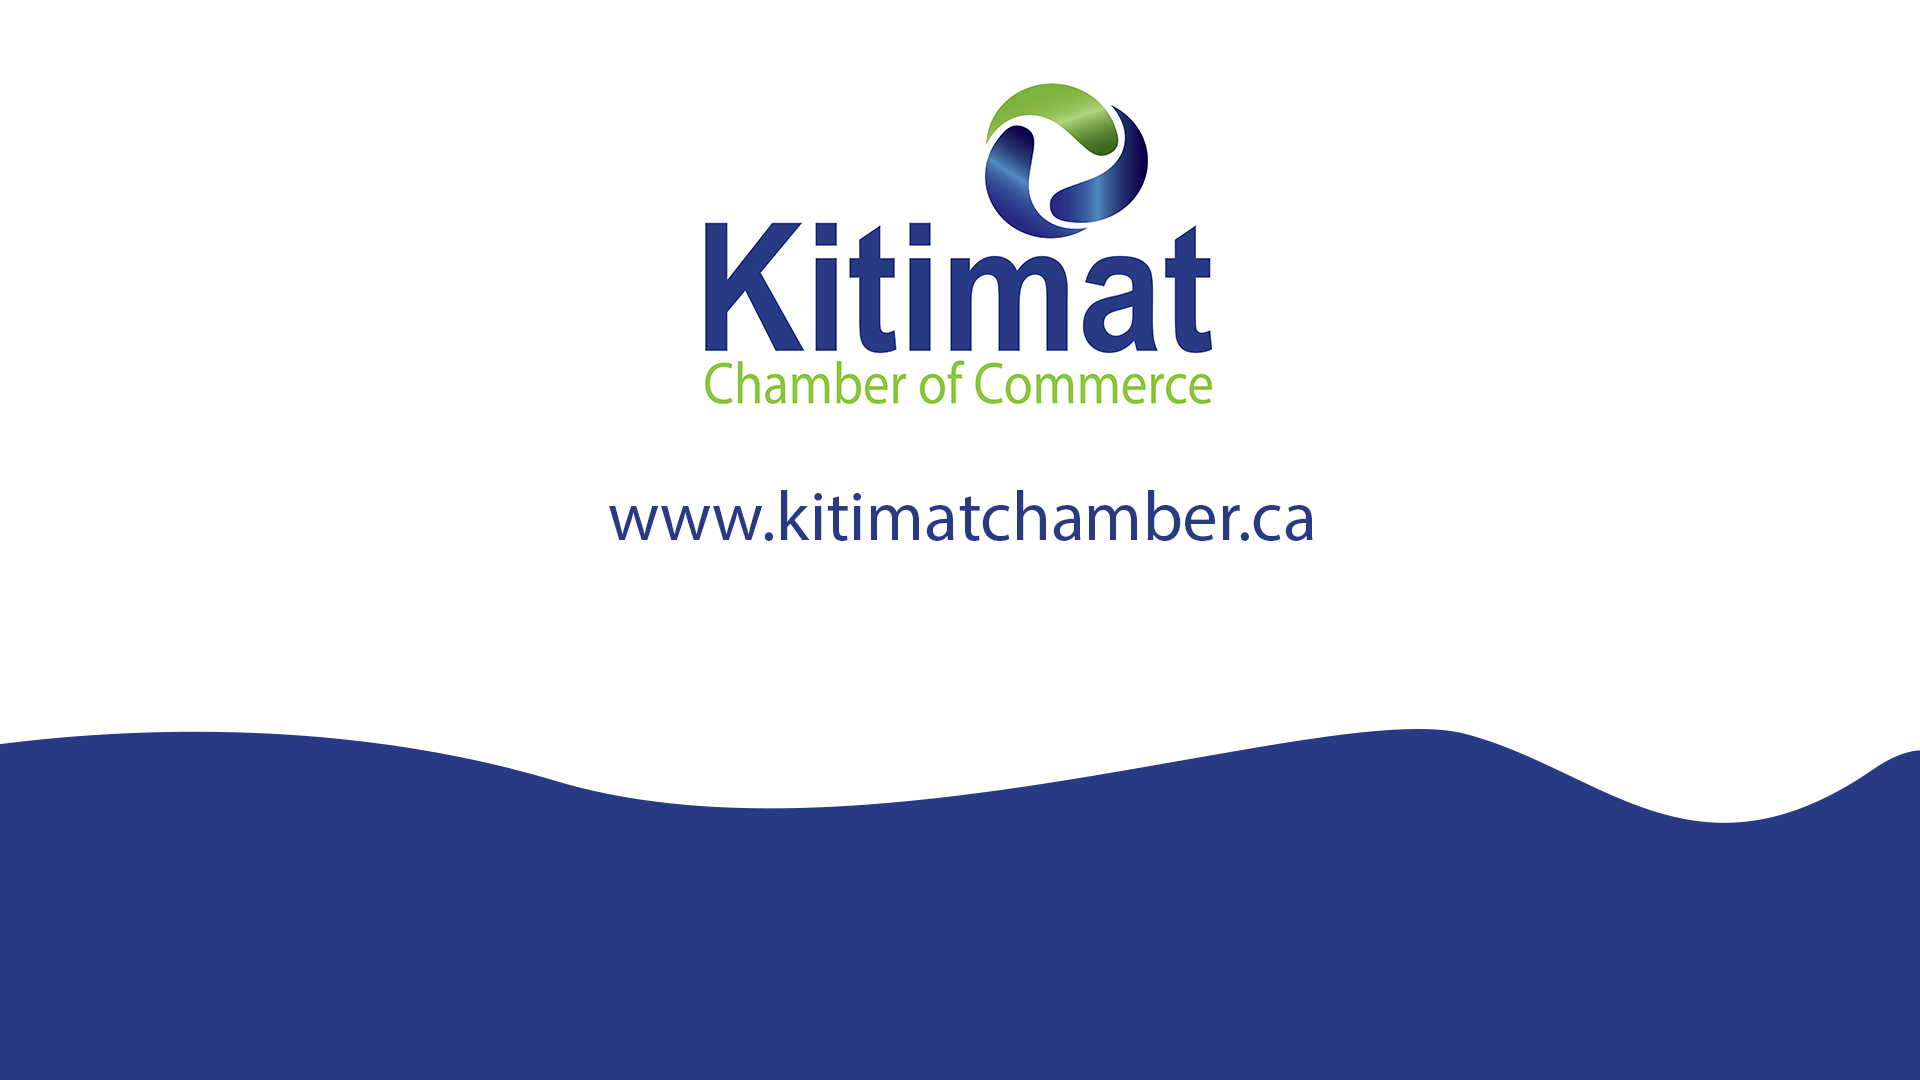 (c) Kitimatchamber.ca